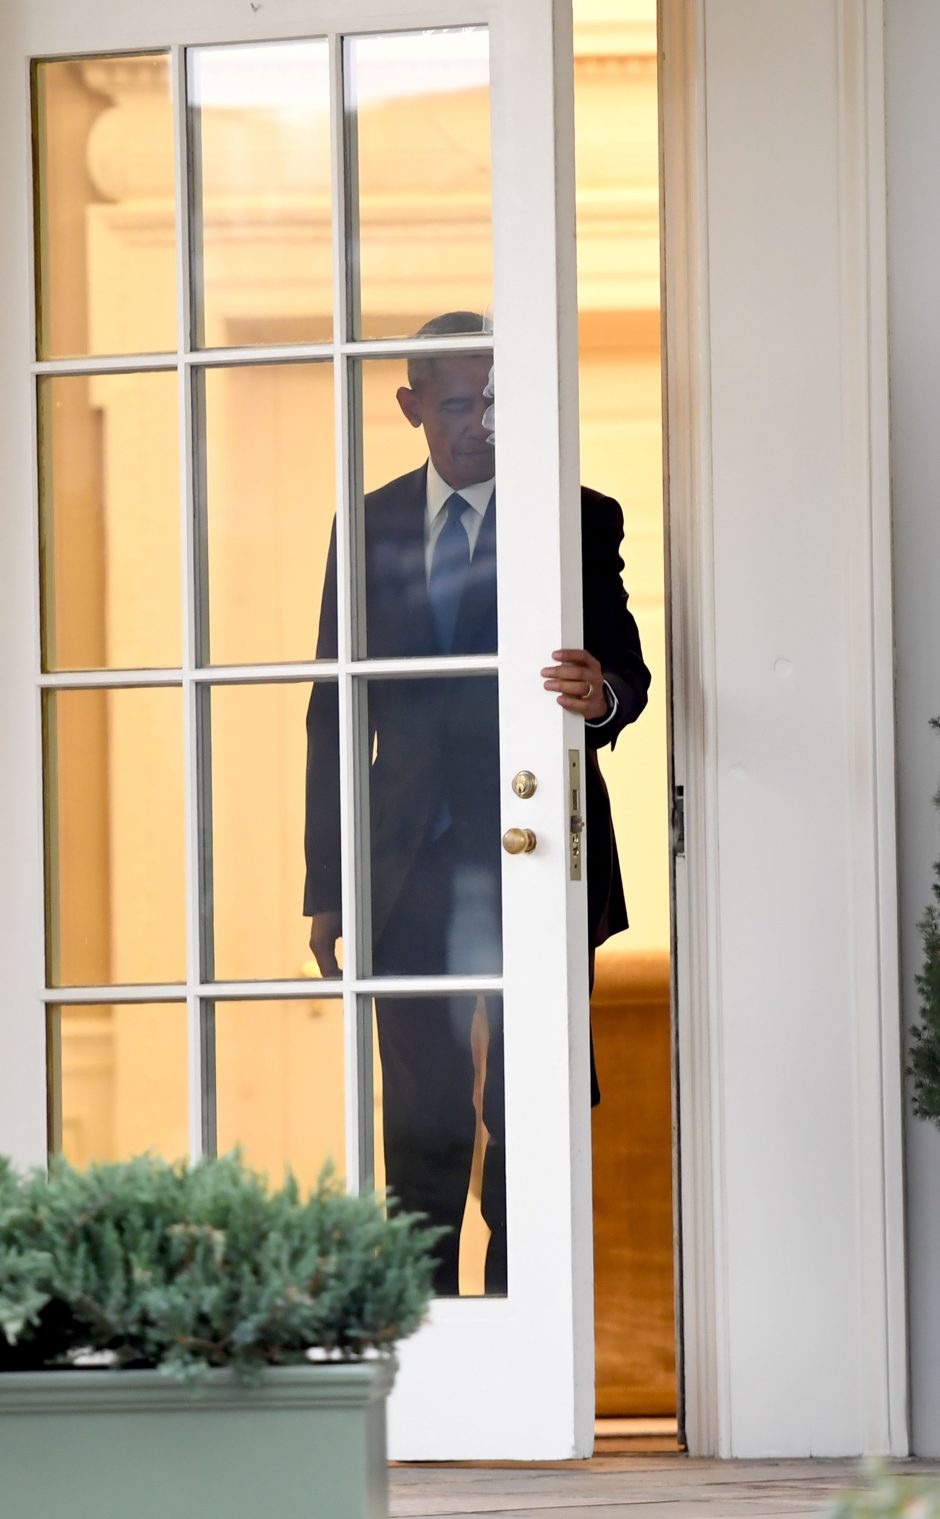 B. Obama paskutinį kartą pabuvojo Ovaliajame kabinete